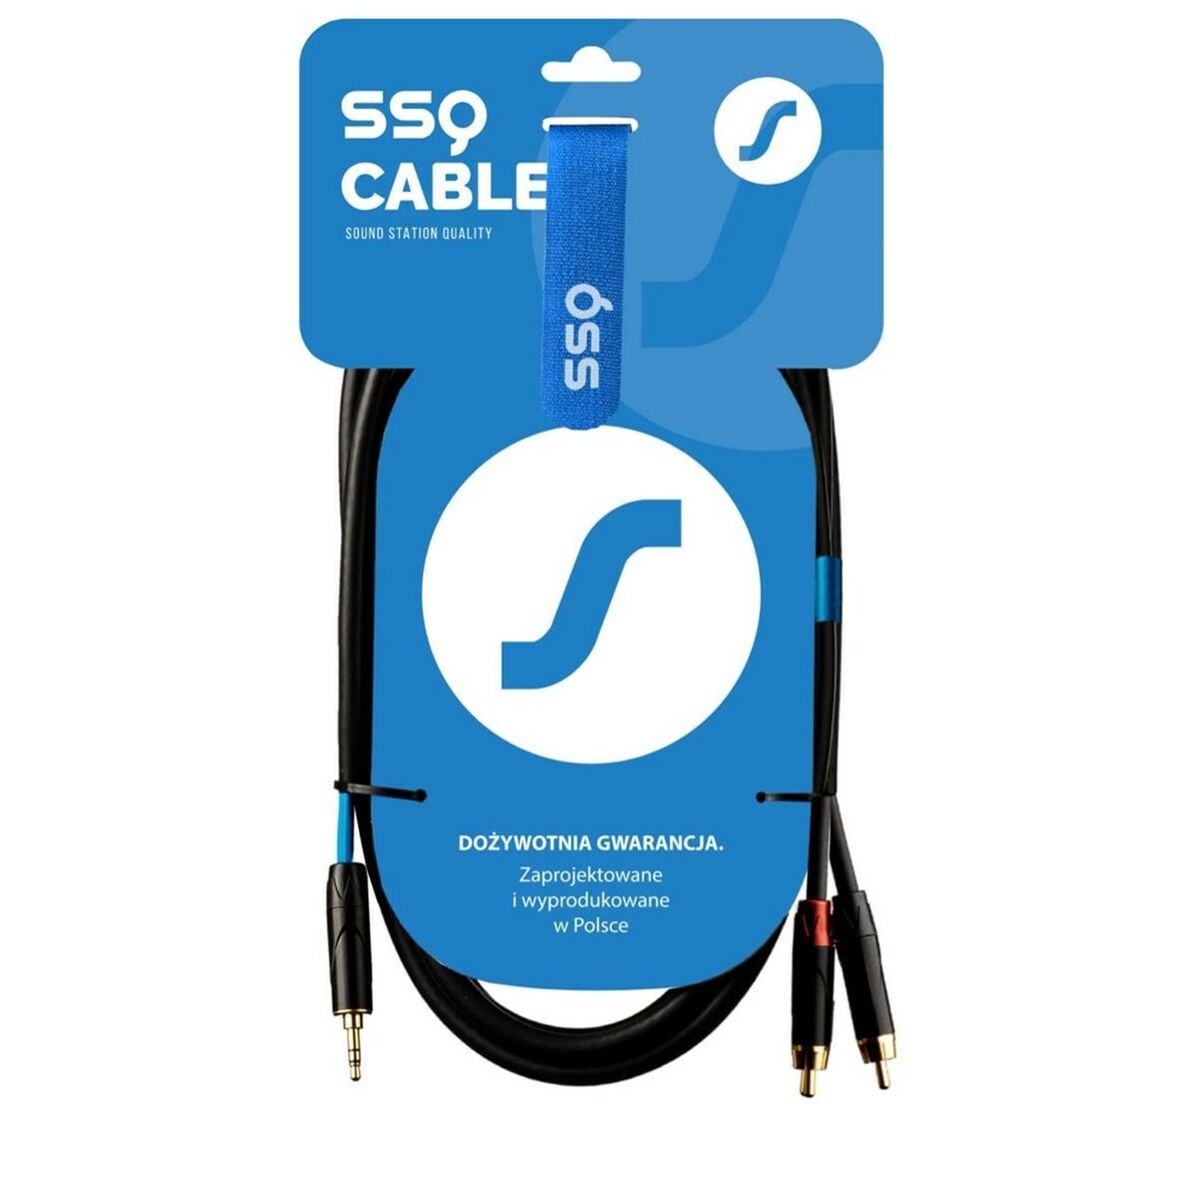 Câble 2 x RCA Sound station quality (SSQ) SS-1422 2 m